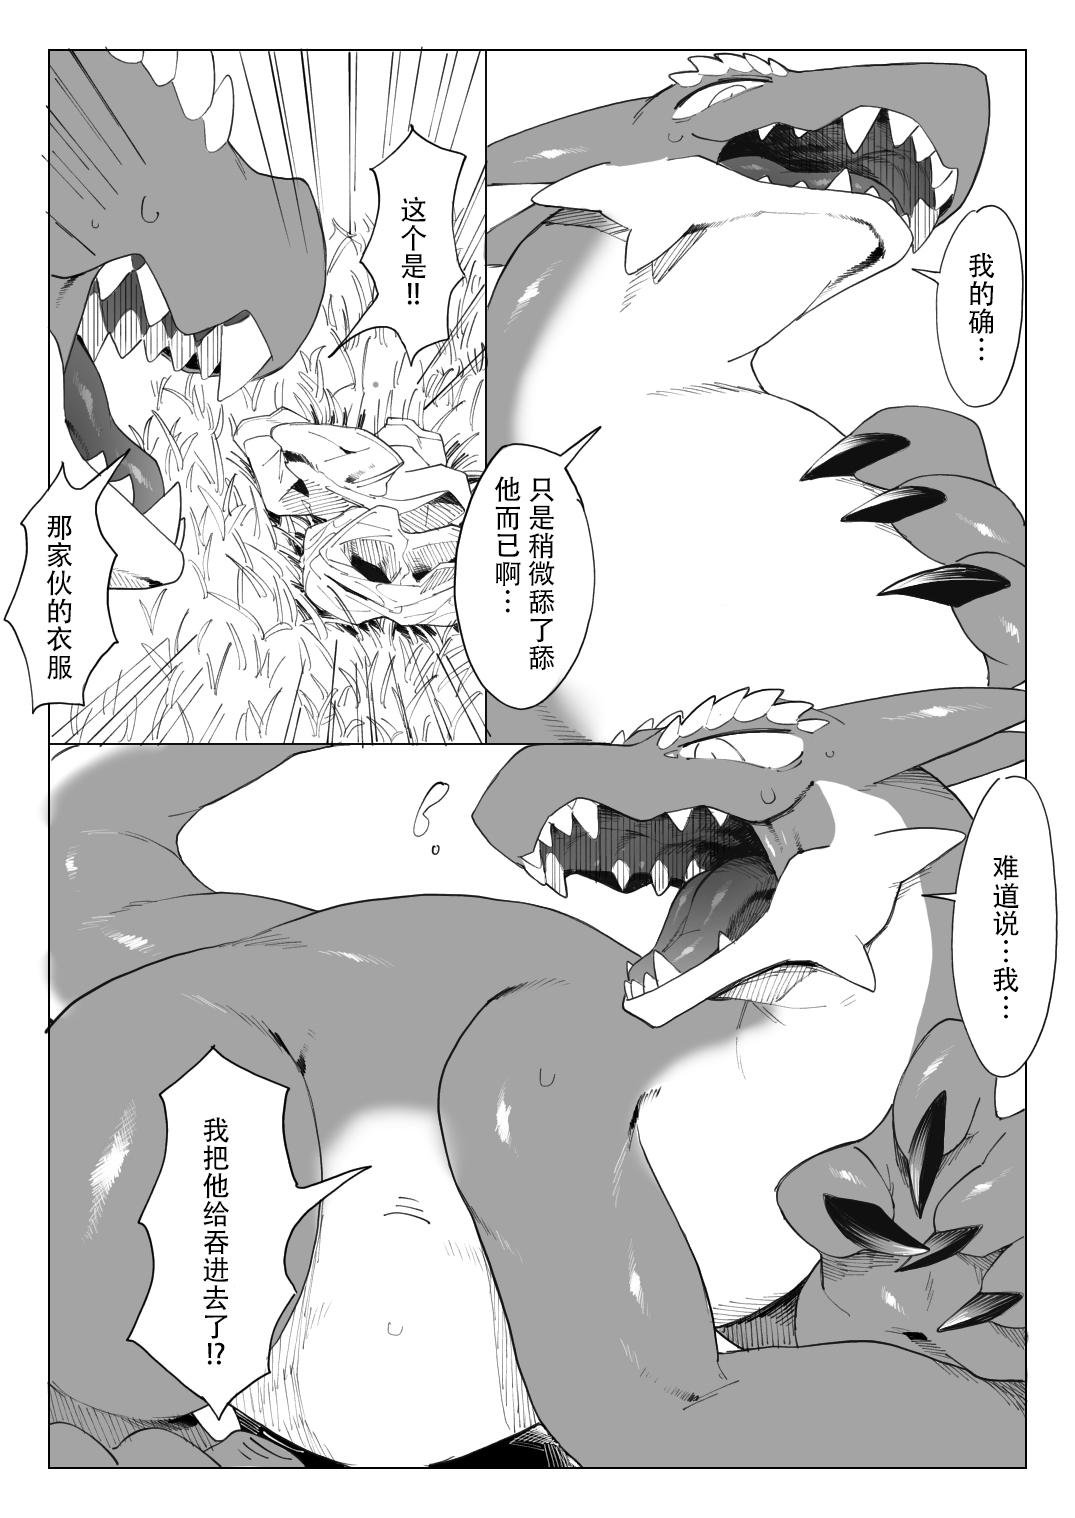 Dragon to Keme Shota no Tabi | 龙与兽耳正太的旅行 18